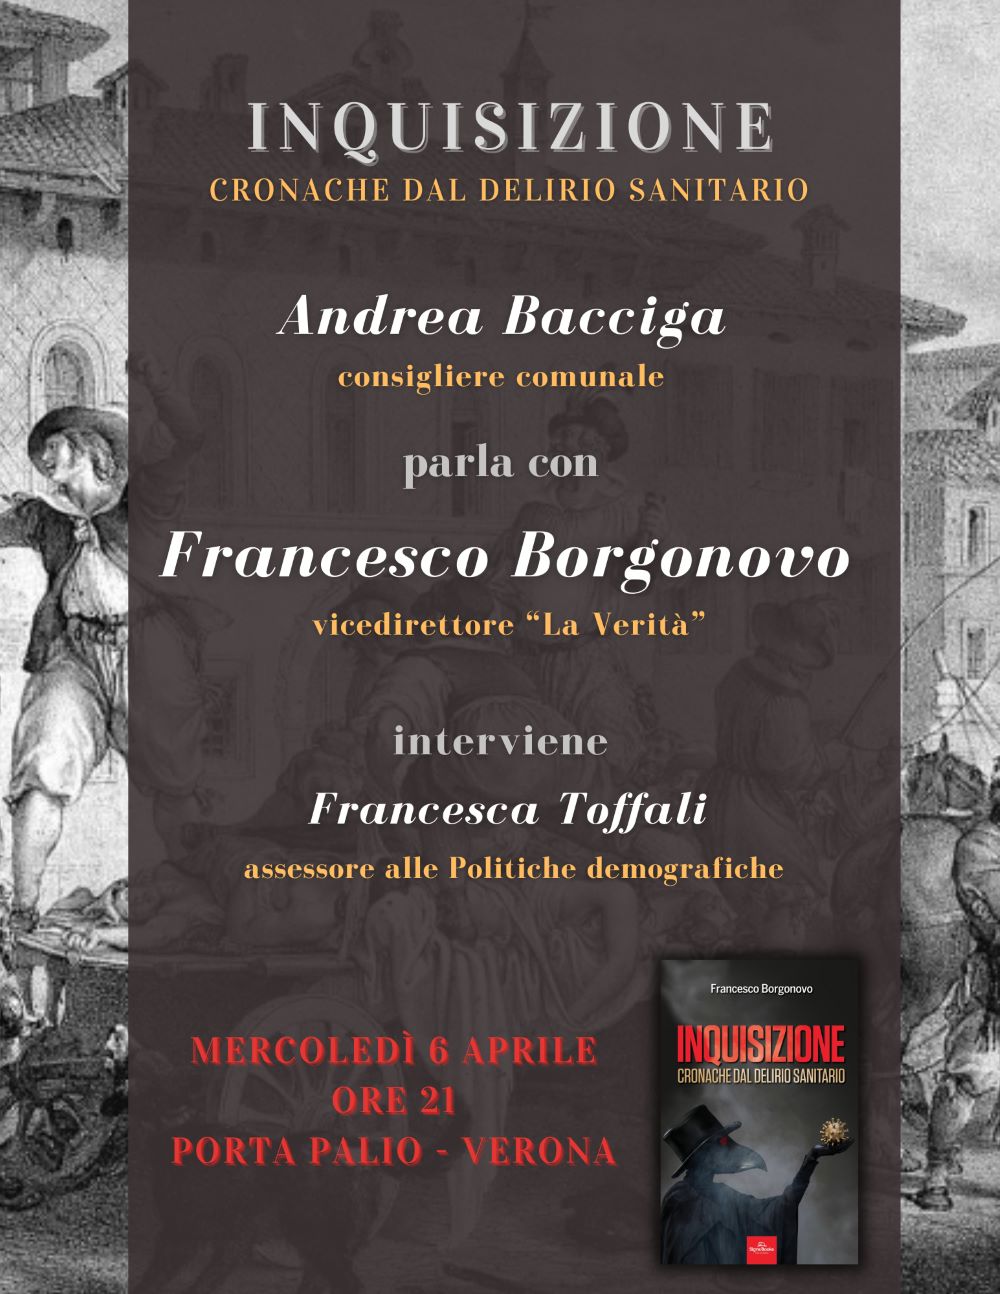 Francesco Borgonovo mercoledì a Verona, a Porta Palio il nuovo libro sul “delirio sanitario”